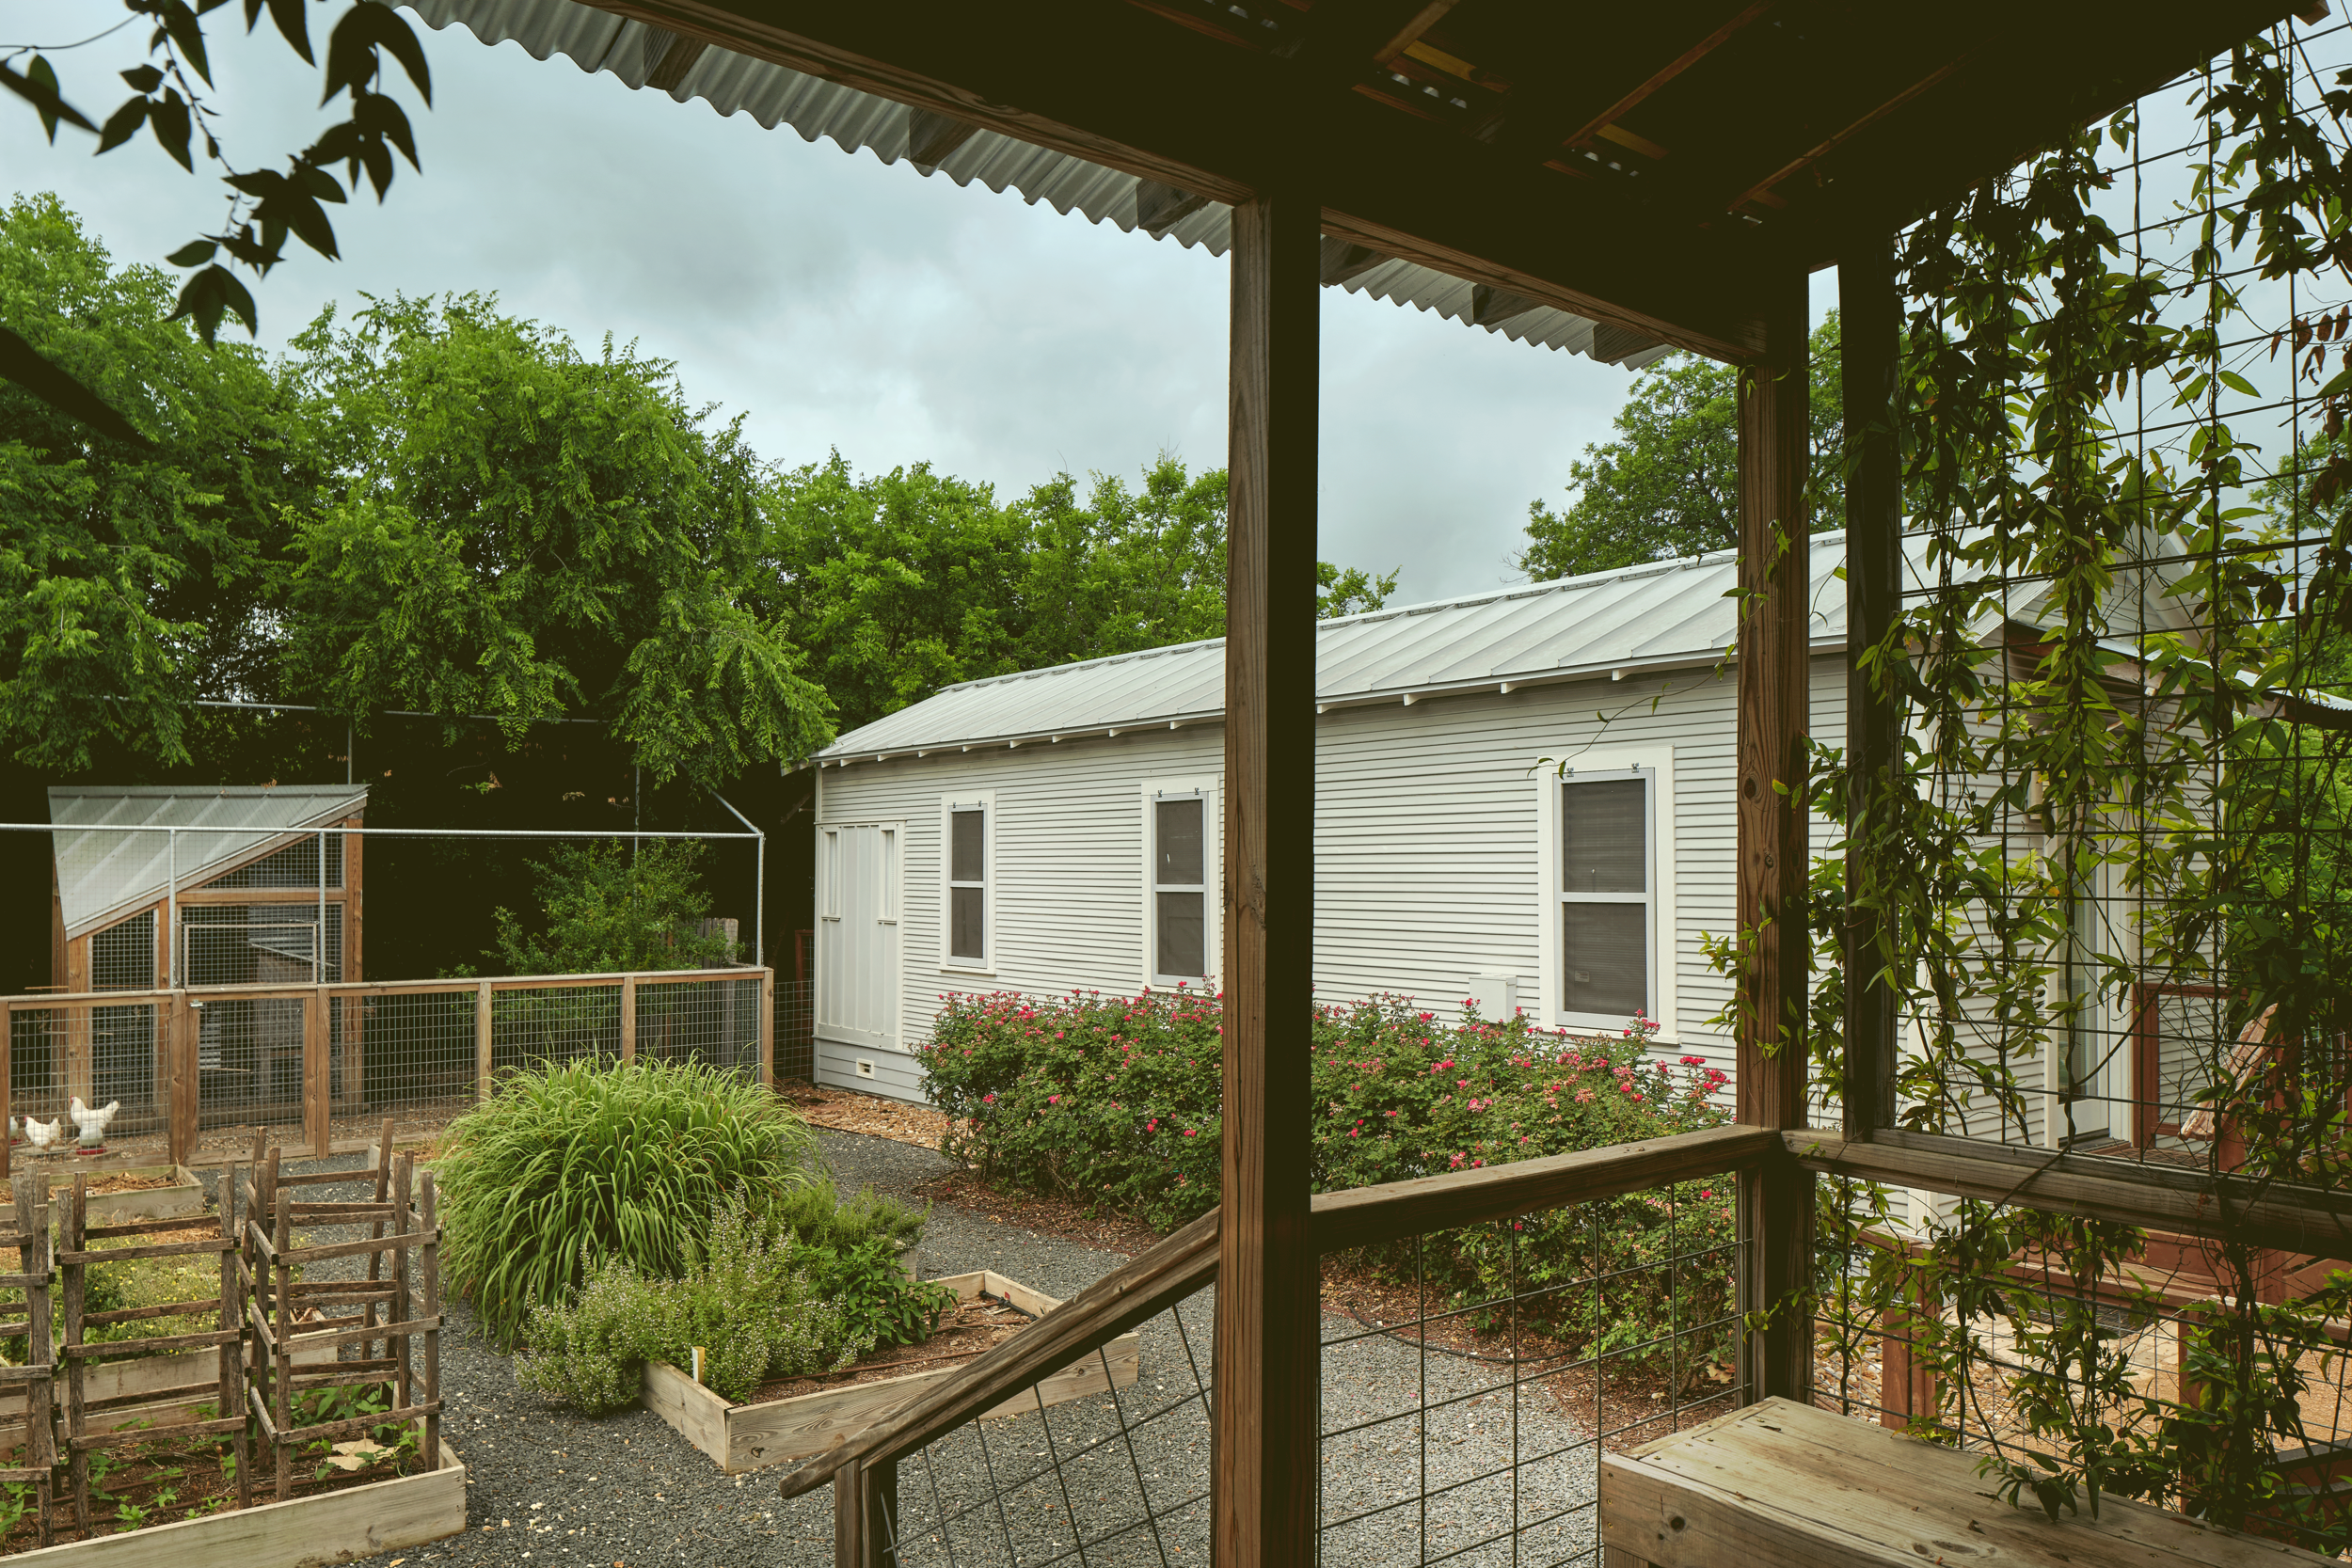 Exterior view, Facing Exterior of Leigh Street Shotgun House, Leigh Street Shotgun House, San Antonio, Texas, 2015. Photo by Dror Baldinger